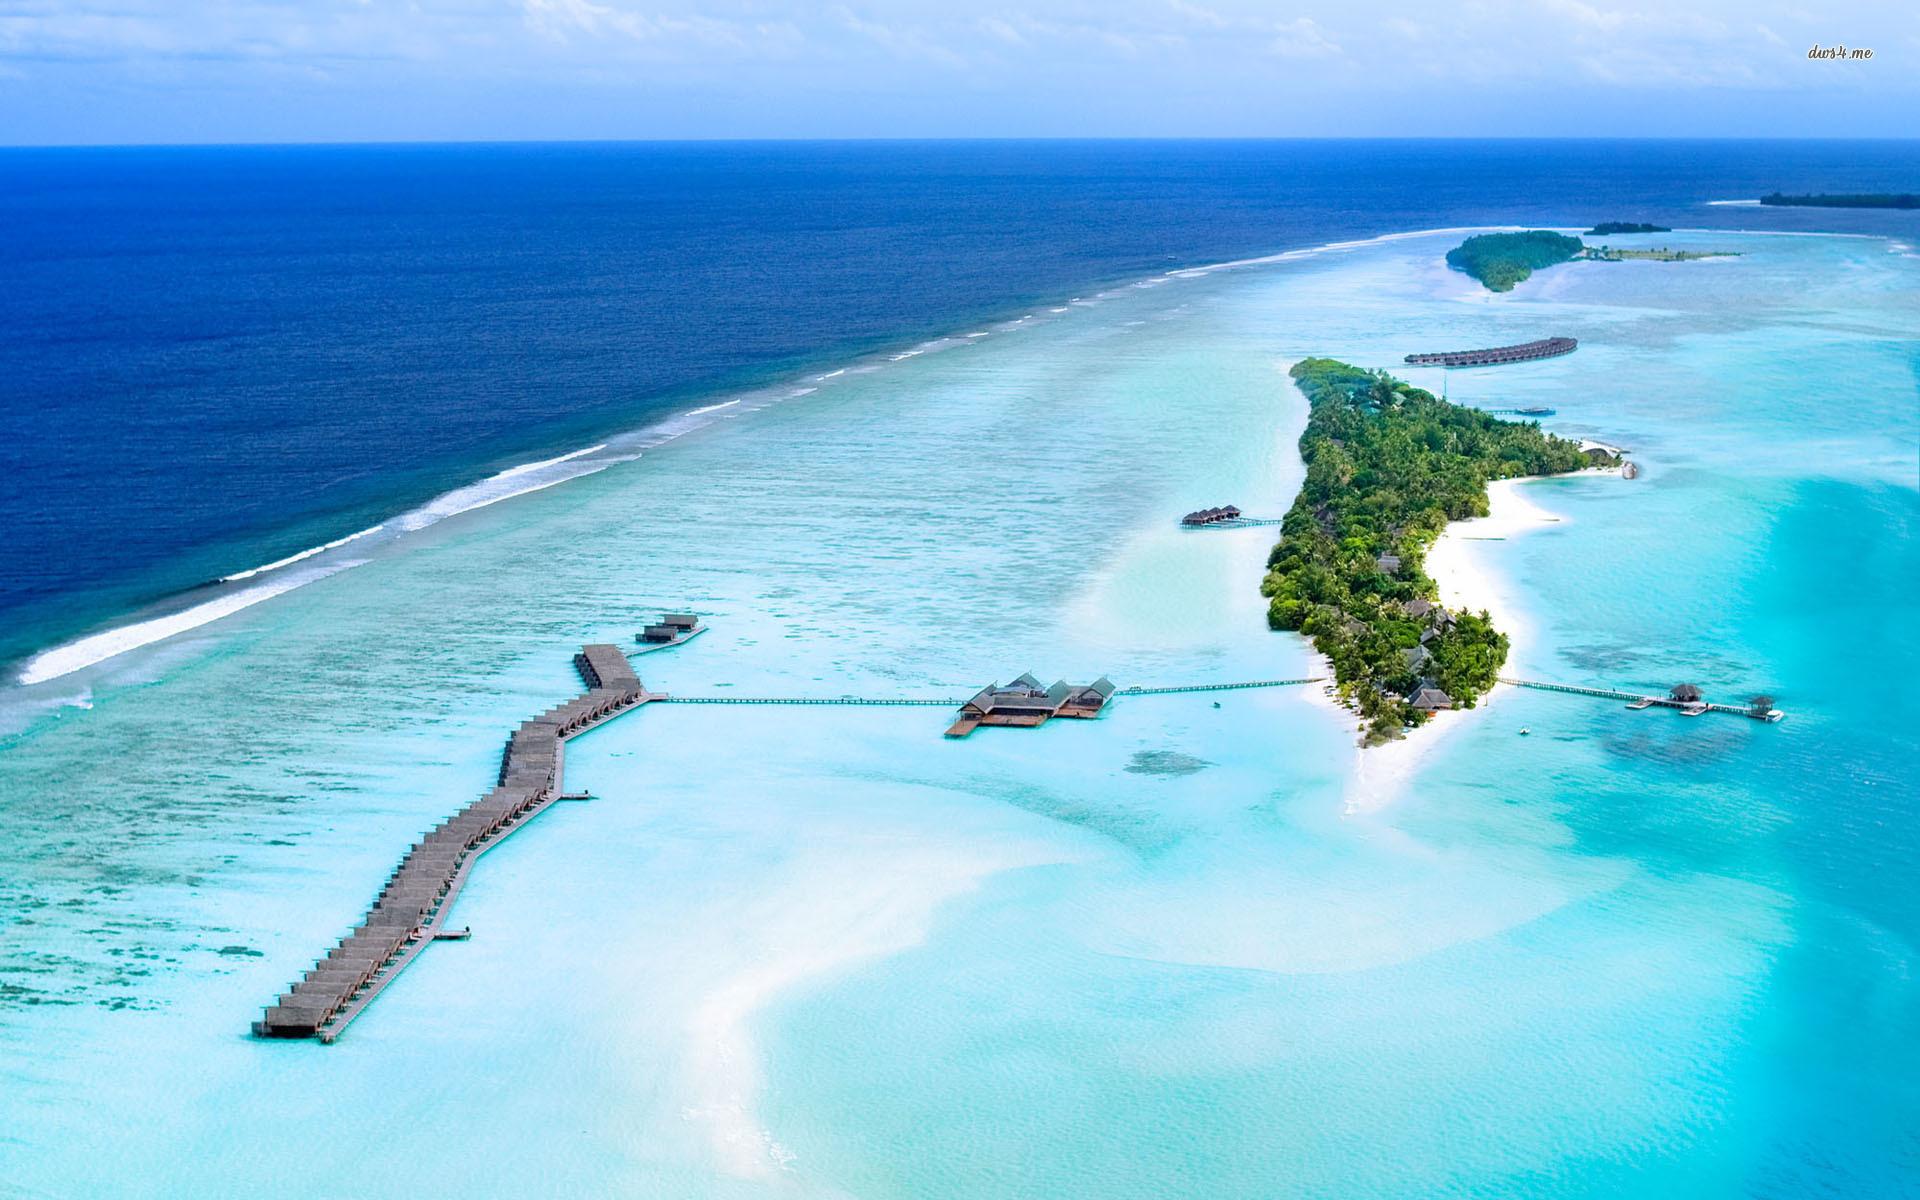 Island resort in Maldives wallpaper wallpaper